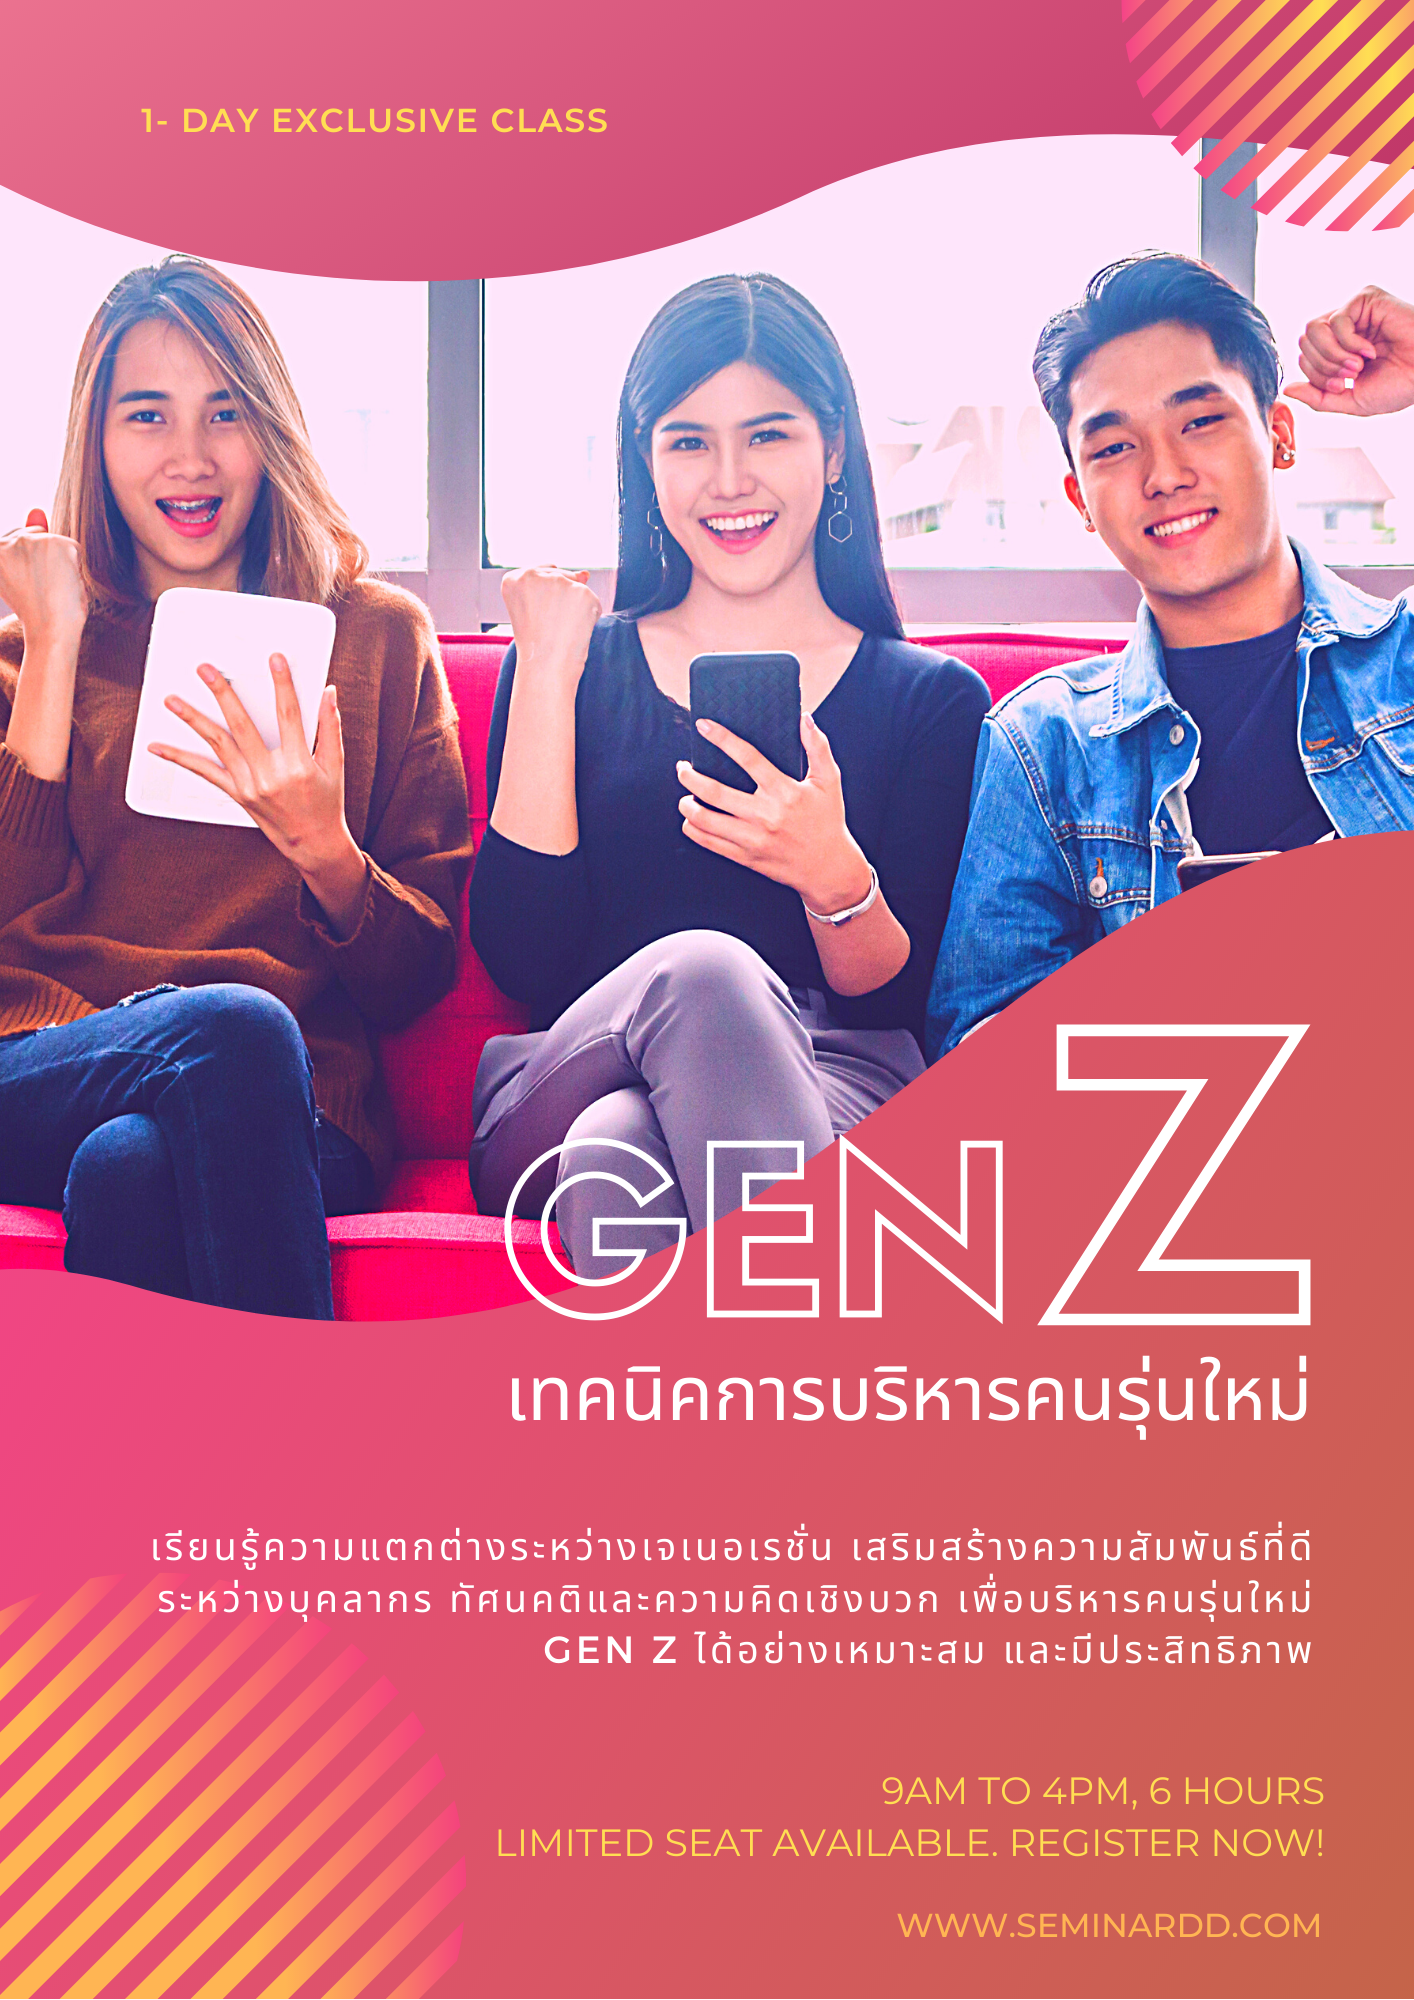 GEN Z : เทคนิคการบริหารคนรุ่นใหม่ ในองค์กรอย่างมีประสิทธิภาพ